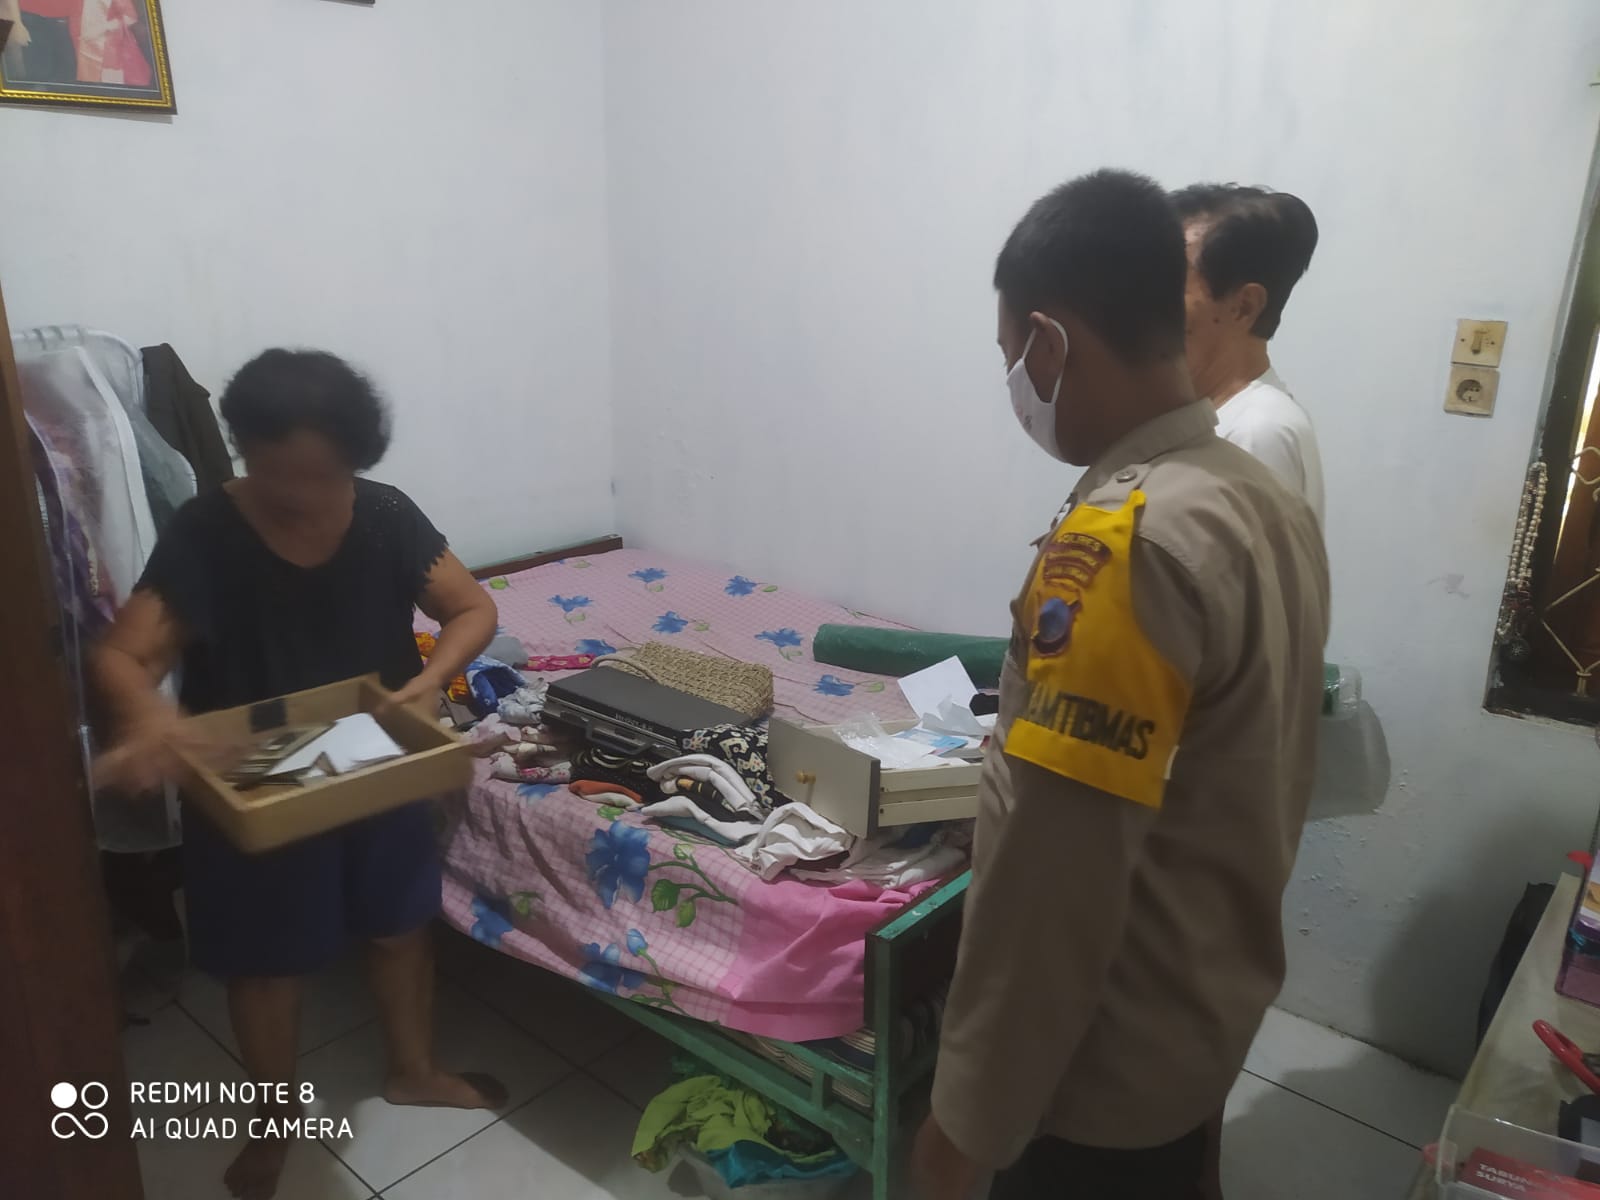 Di Banjarnegara, Tiga Orang Ngaku Petugas PLN, Kuras Isi Rumah Korban, Hp dan Perhiasan Raib